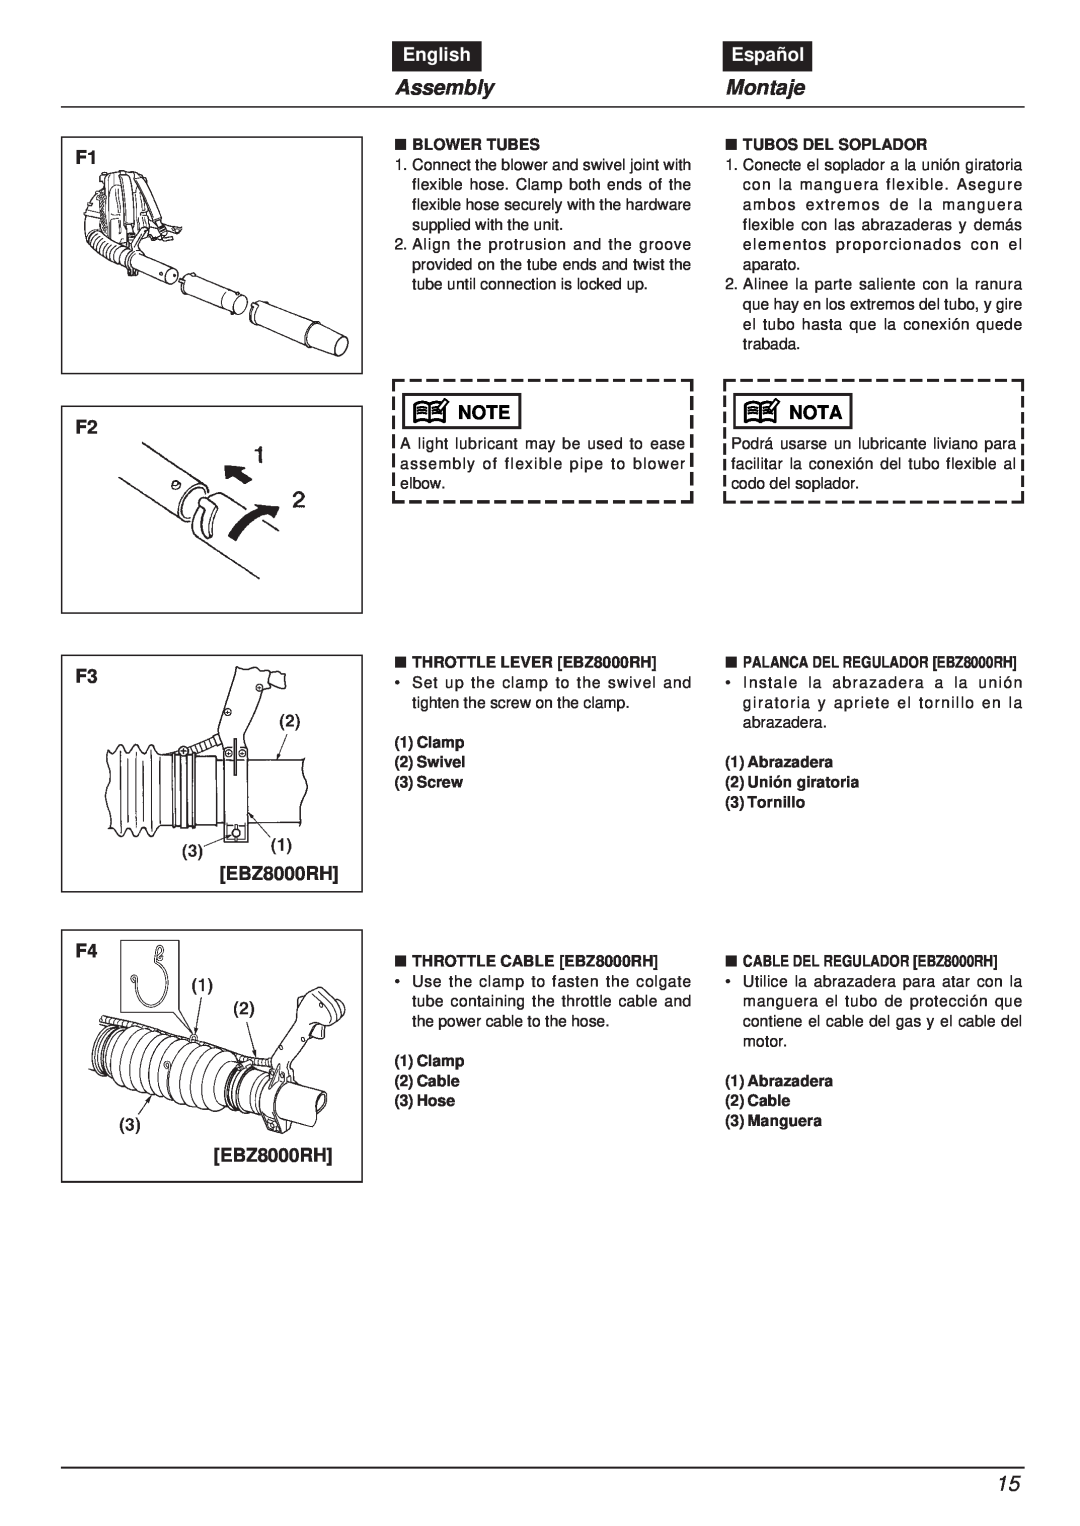 RedMax manual Assembly, Montaje, English, Español, F2 F3, Nota, F4 EBZ8000RH 